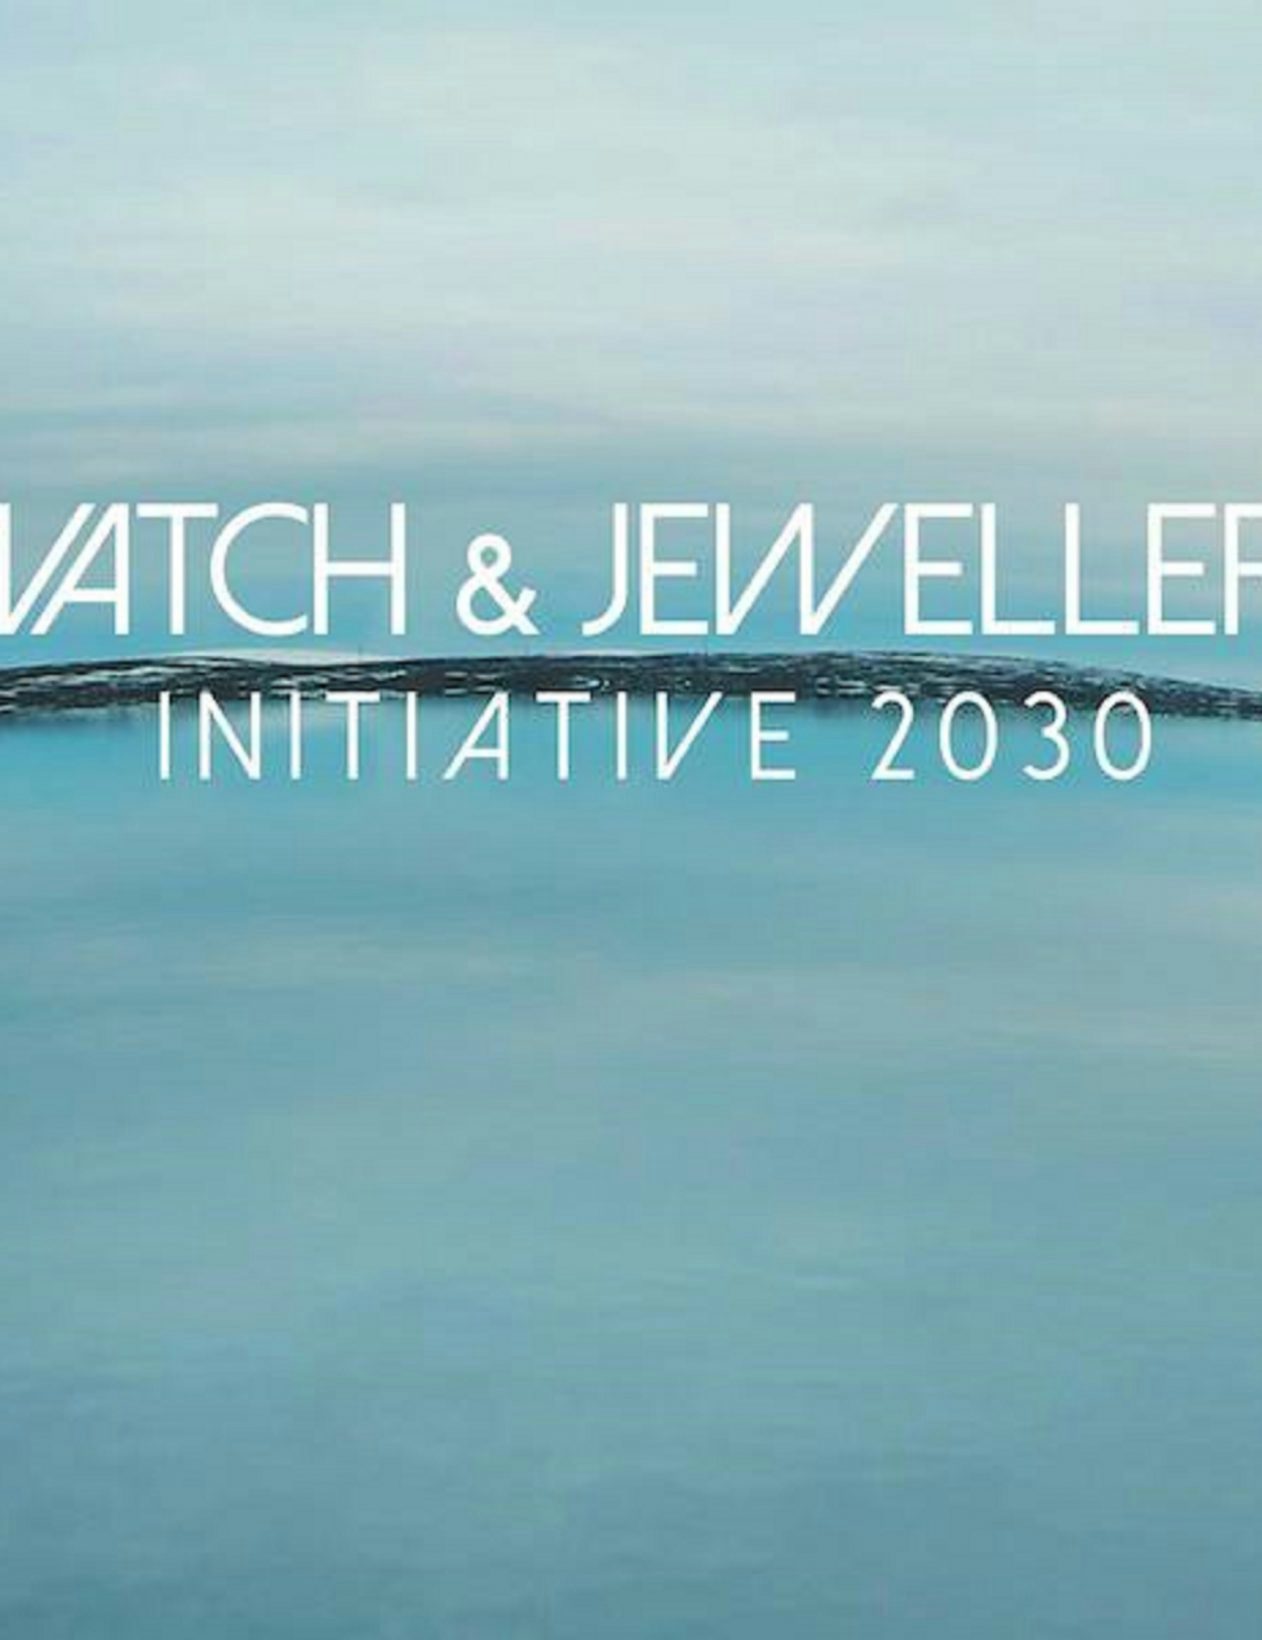 De nouveaux membres rejoignent l’initiative Watch & Jewellery 2030